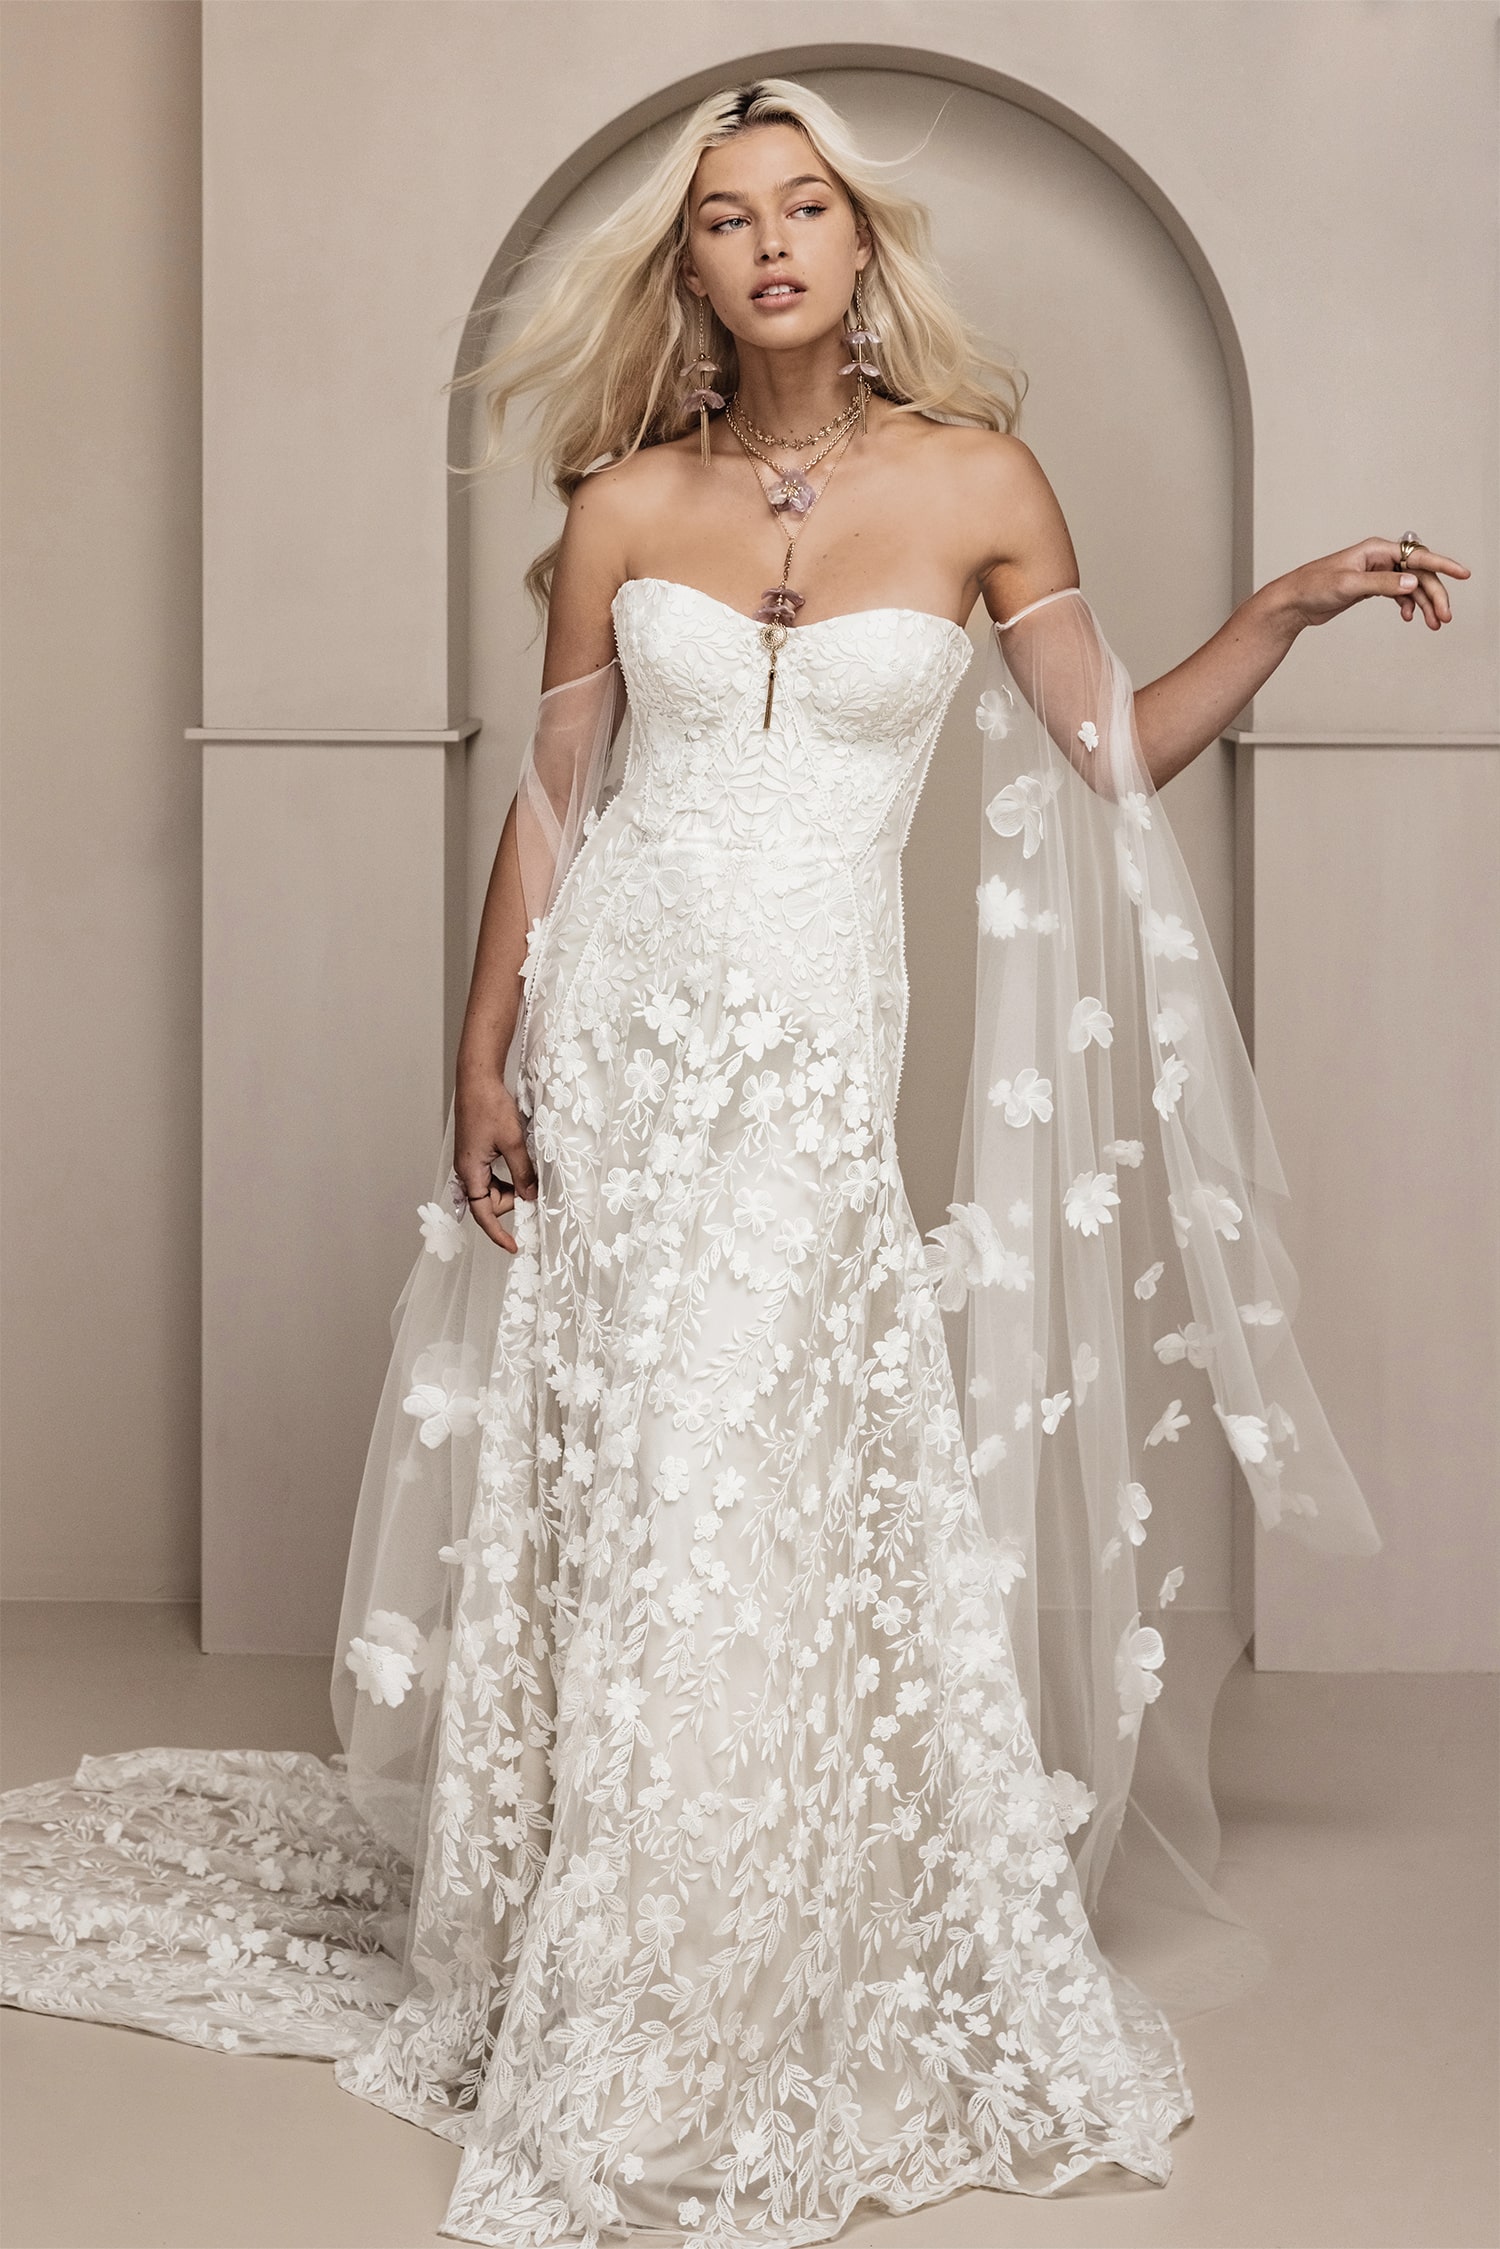 atelier-lawenda-berlin-gdynia-hochzeitskleider-brautkleider-wedding-dresses-rue-de-seine-cora-off-white-gown